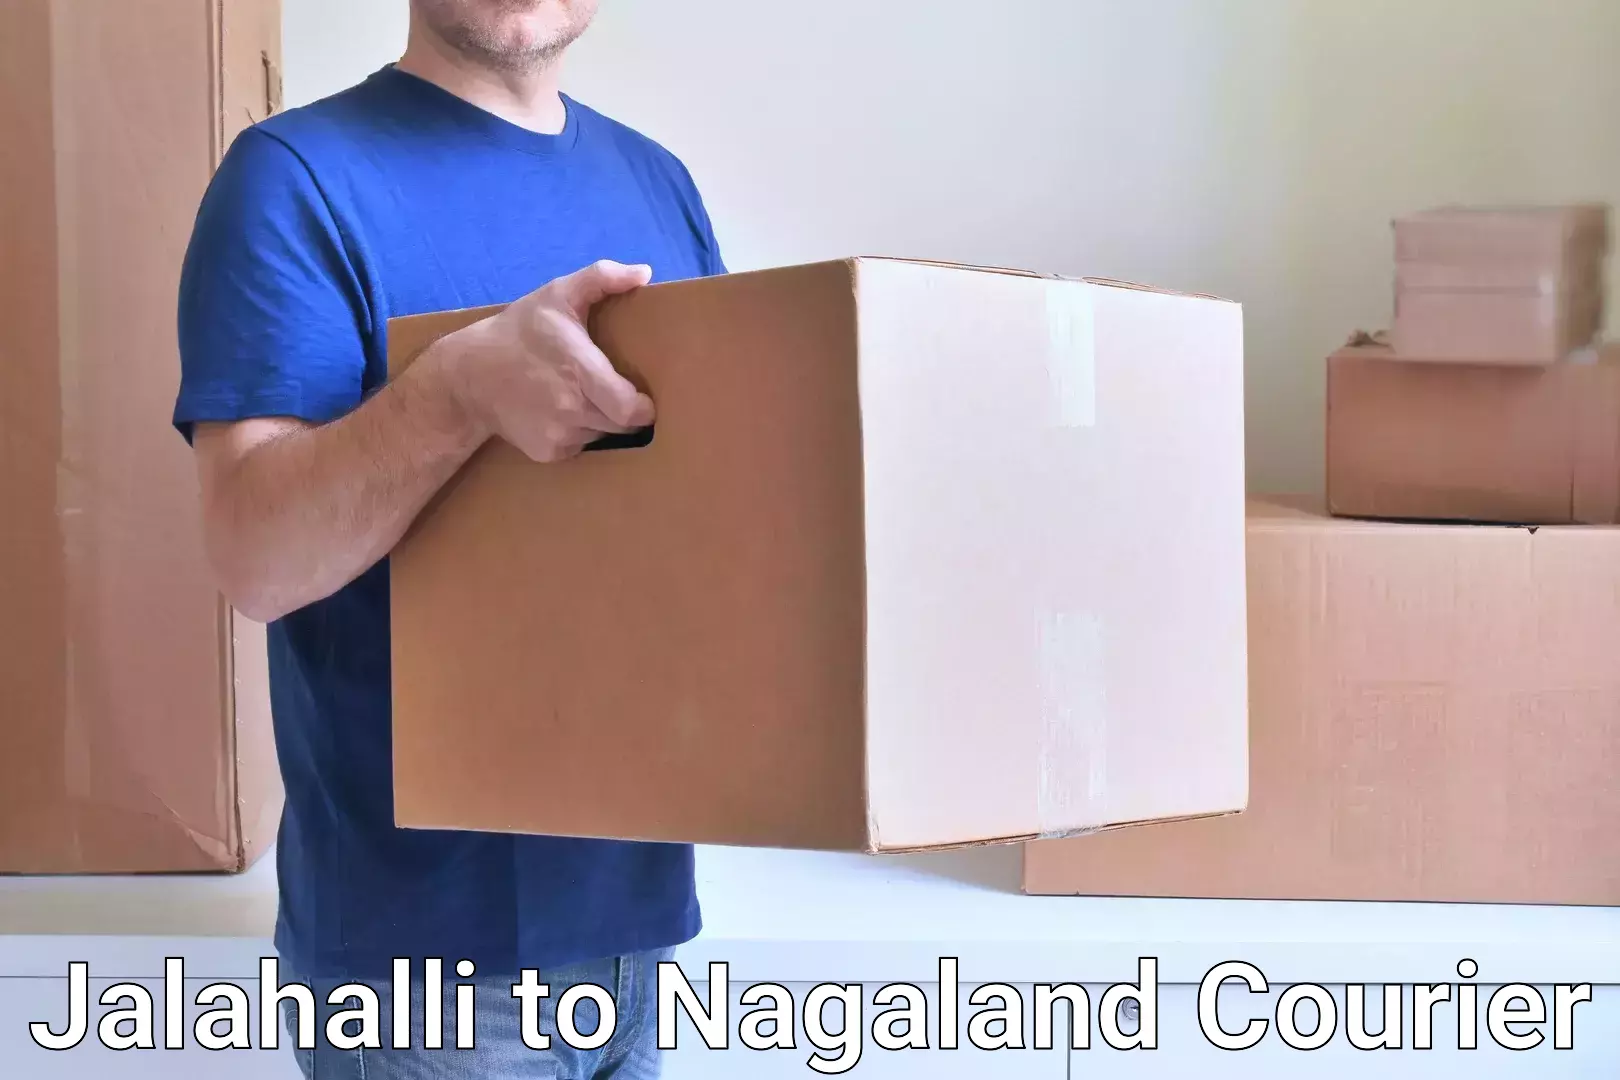 Express logistics service Jalahalli to Nagaland